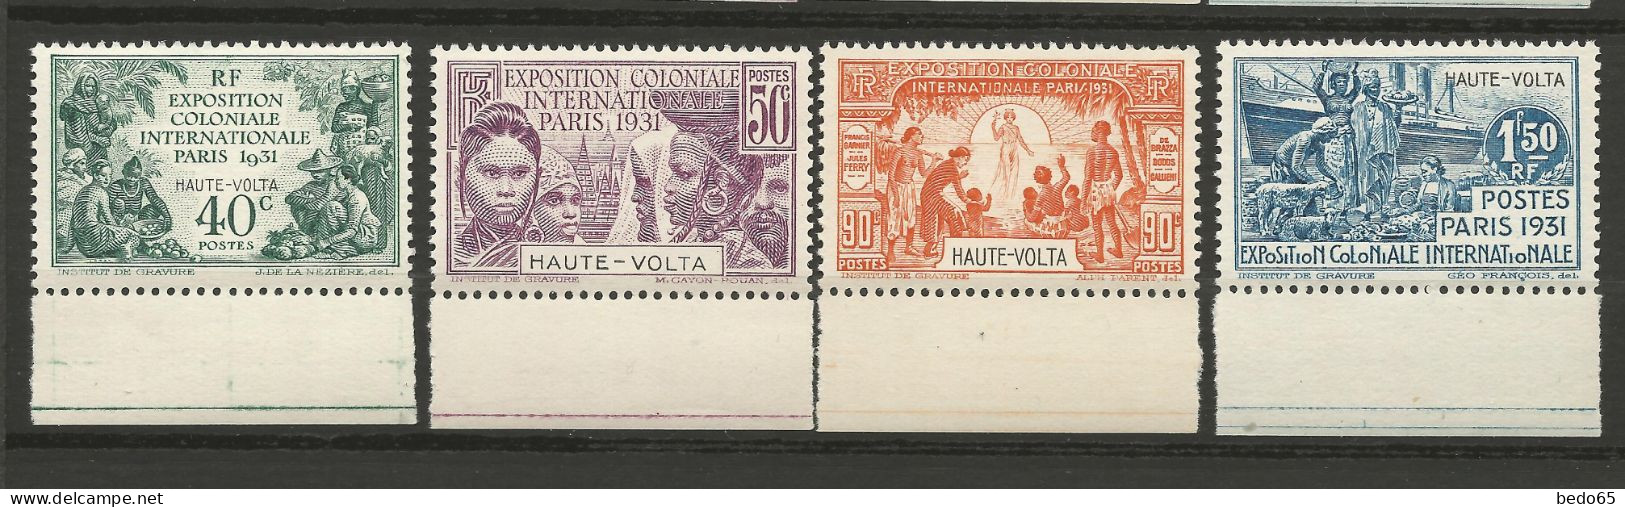 HAUTE-VOLTA EXPO COLONIALE 1931 Série Complète N° 66 à 69 BDF NEUF** LUXE SANS CHARNIERE / Hingeless  / MNH - Ungebraucht